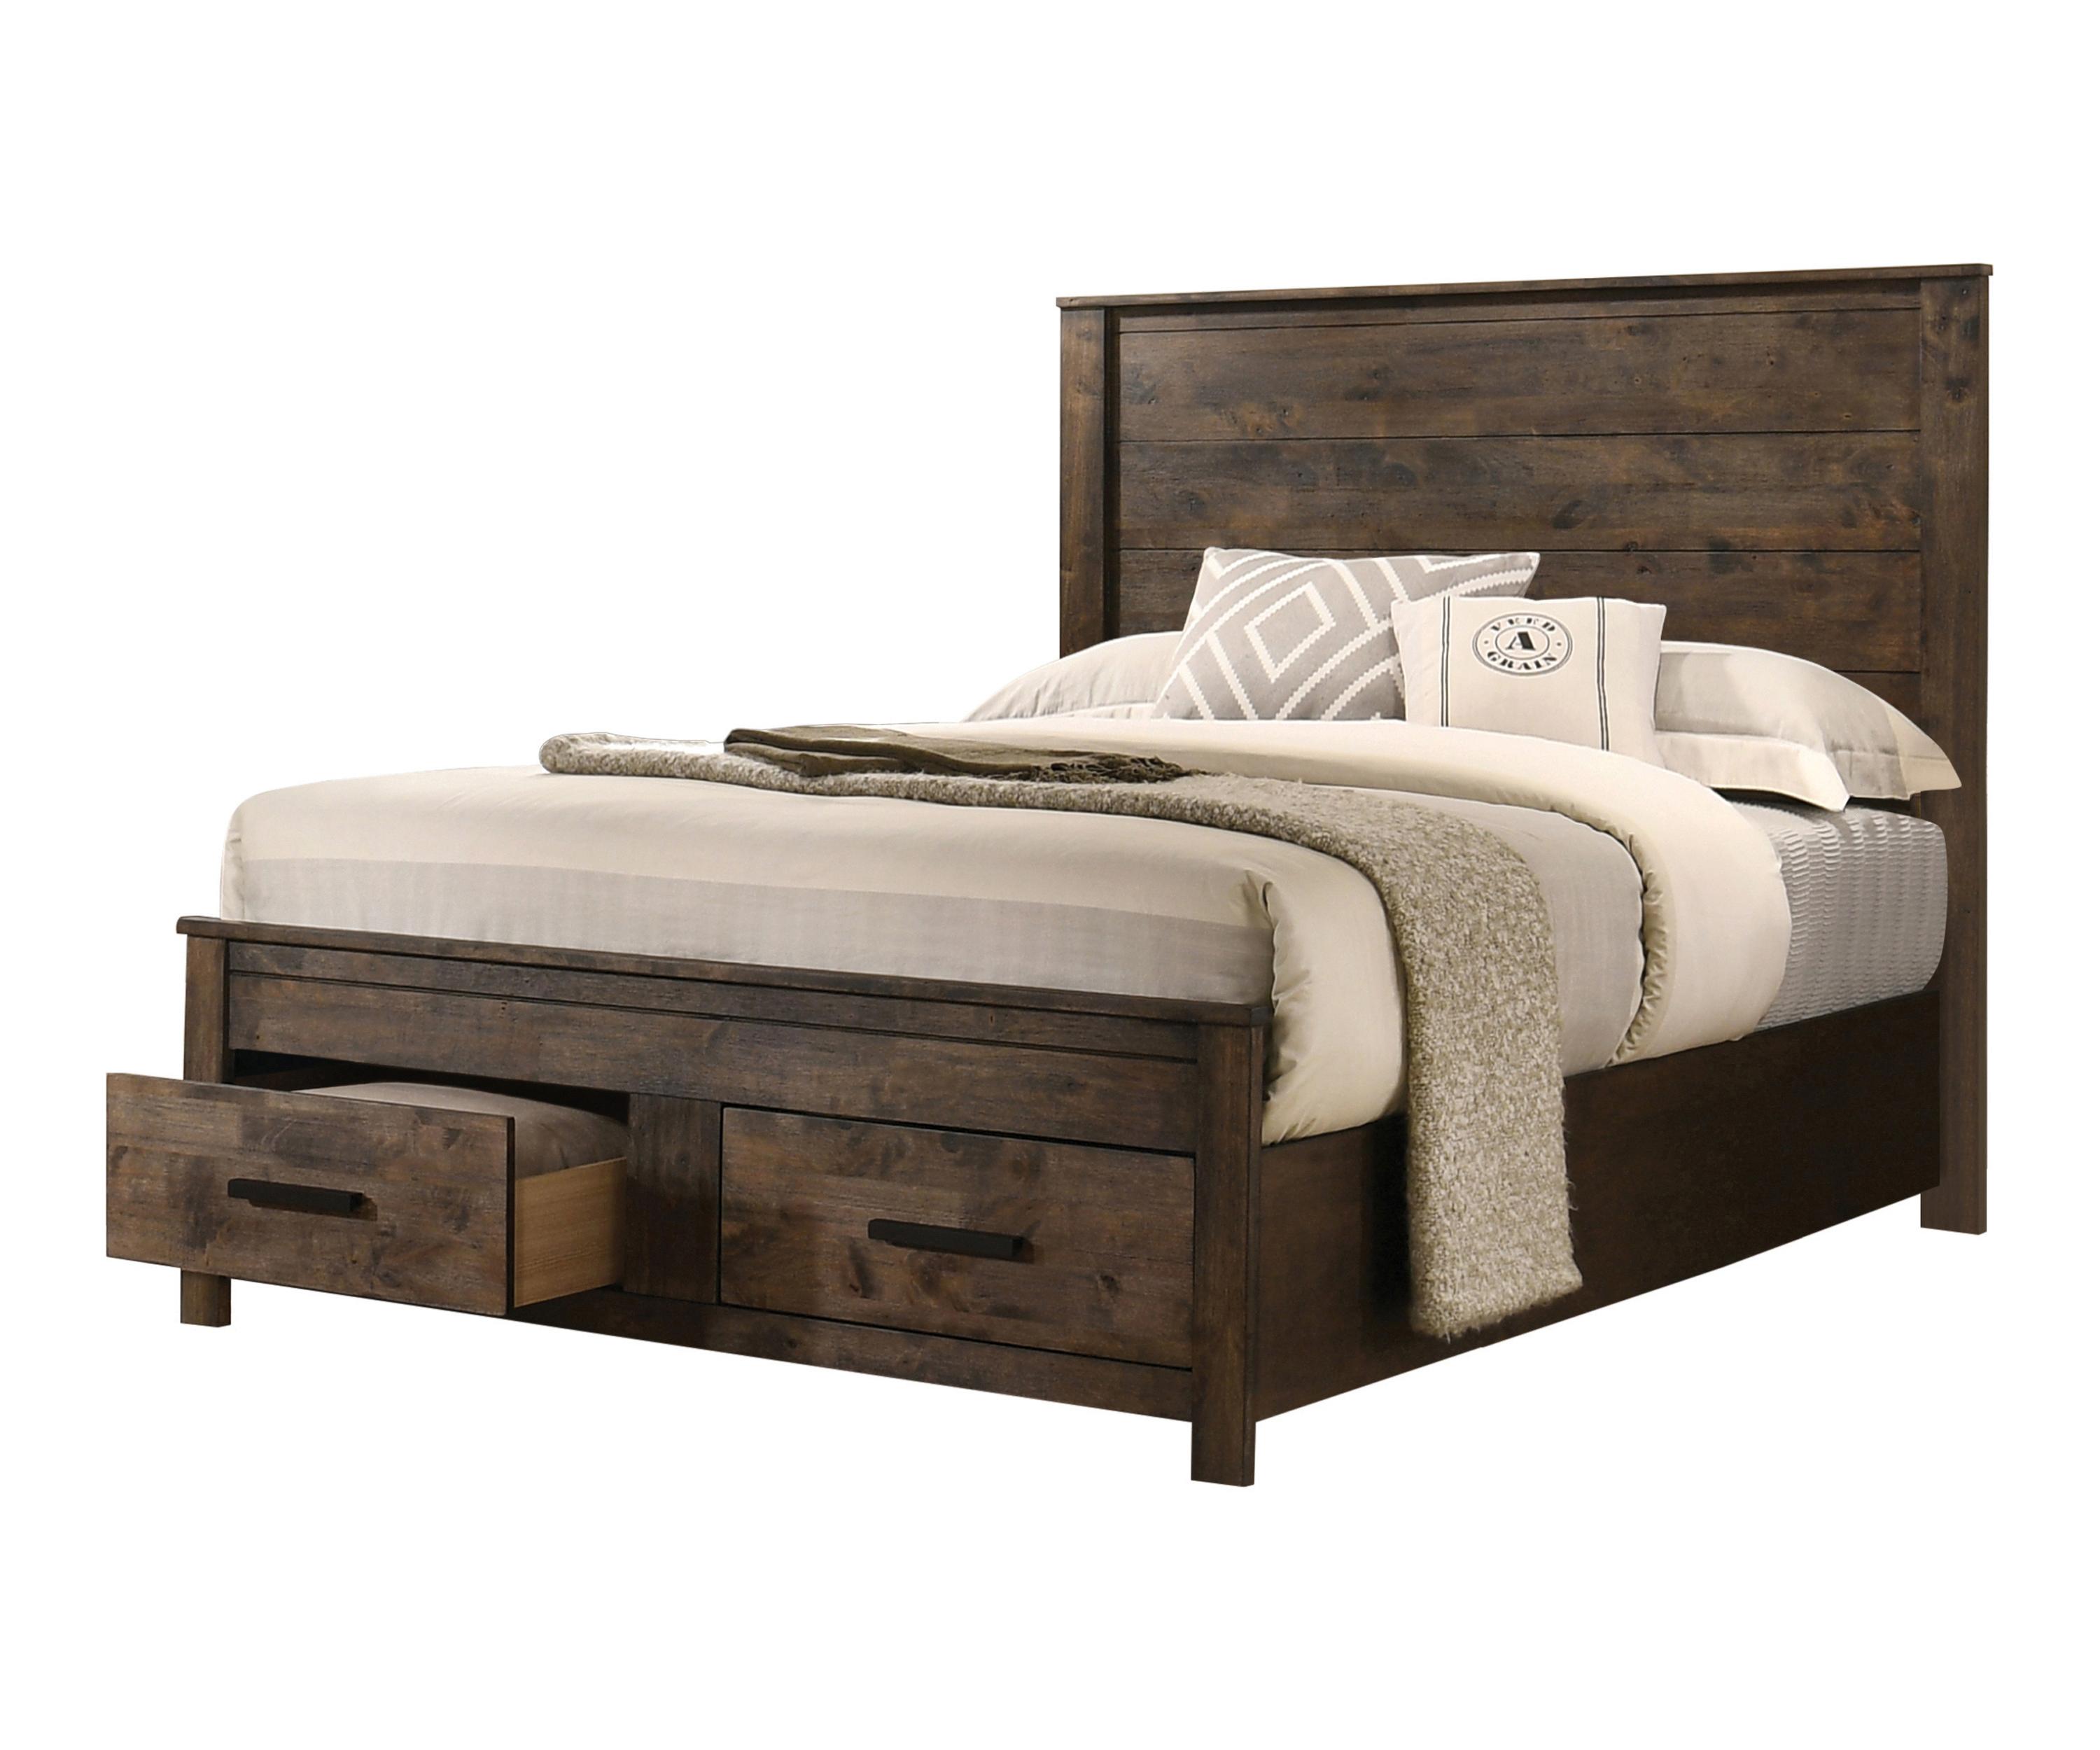 Rustic Bed 222631KE Woodmont 222631KE in Golden Brown 